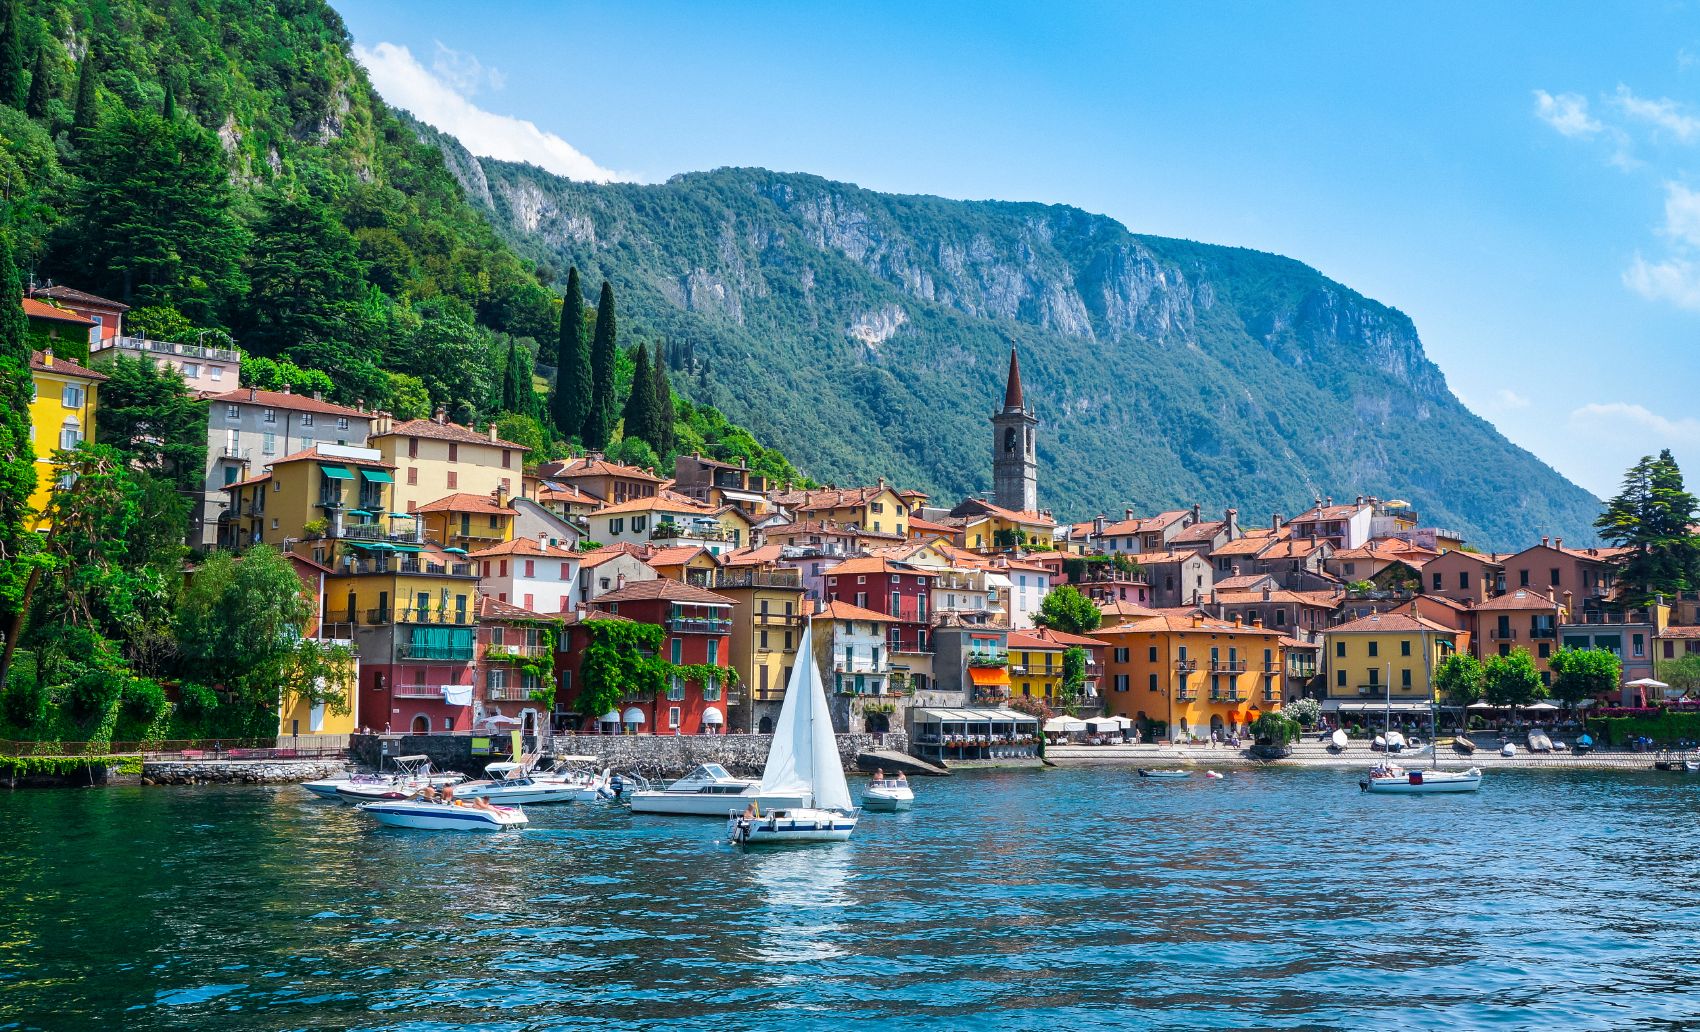 A village on the shores of Lake Como